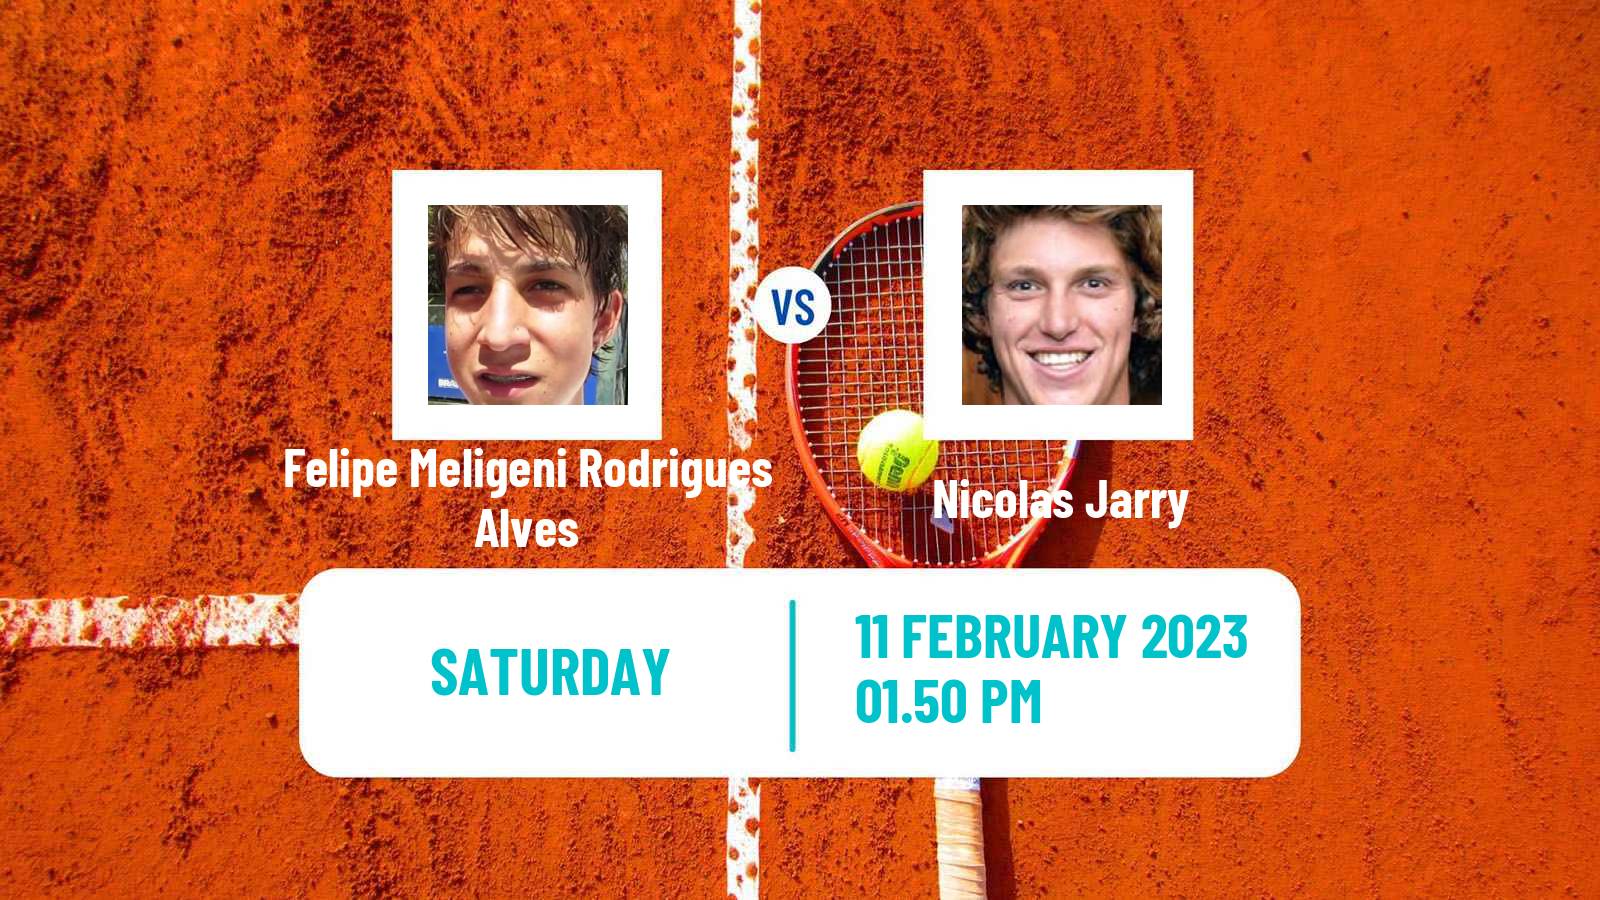 Tennis ATP Buenos Aires Felipe Meligeni Rodrigues Alves - Nicolas Jarry